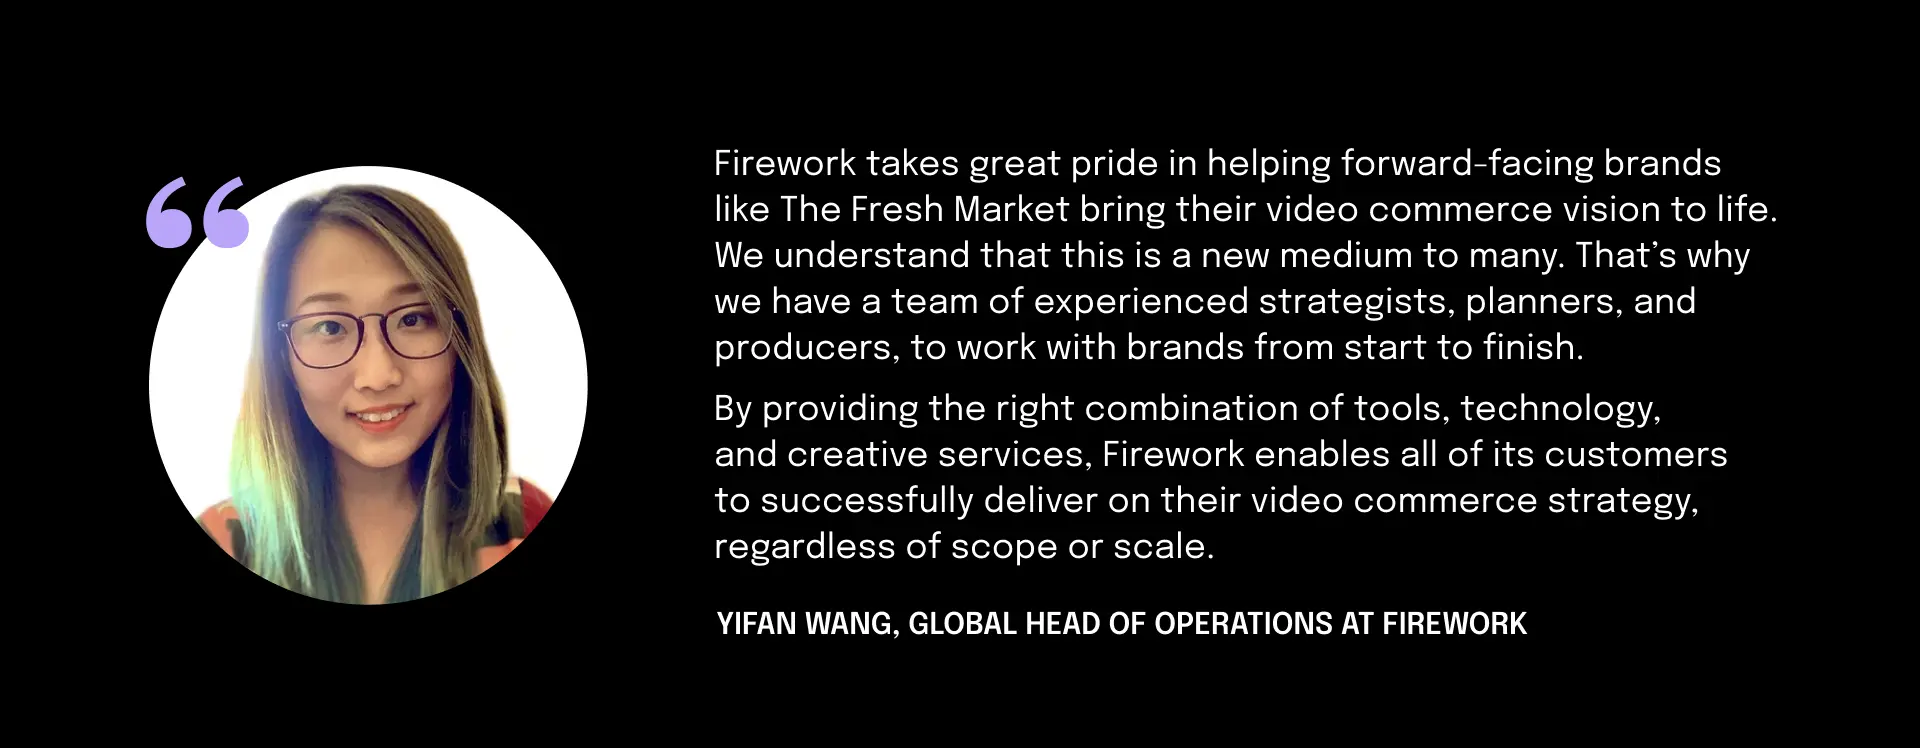 Yifan Wang - Firework